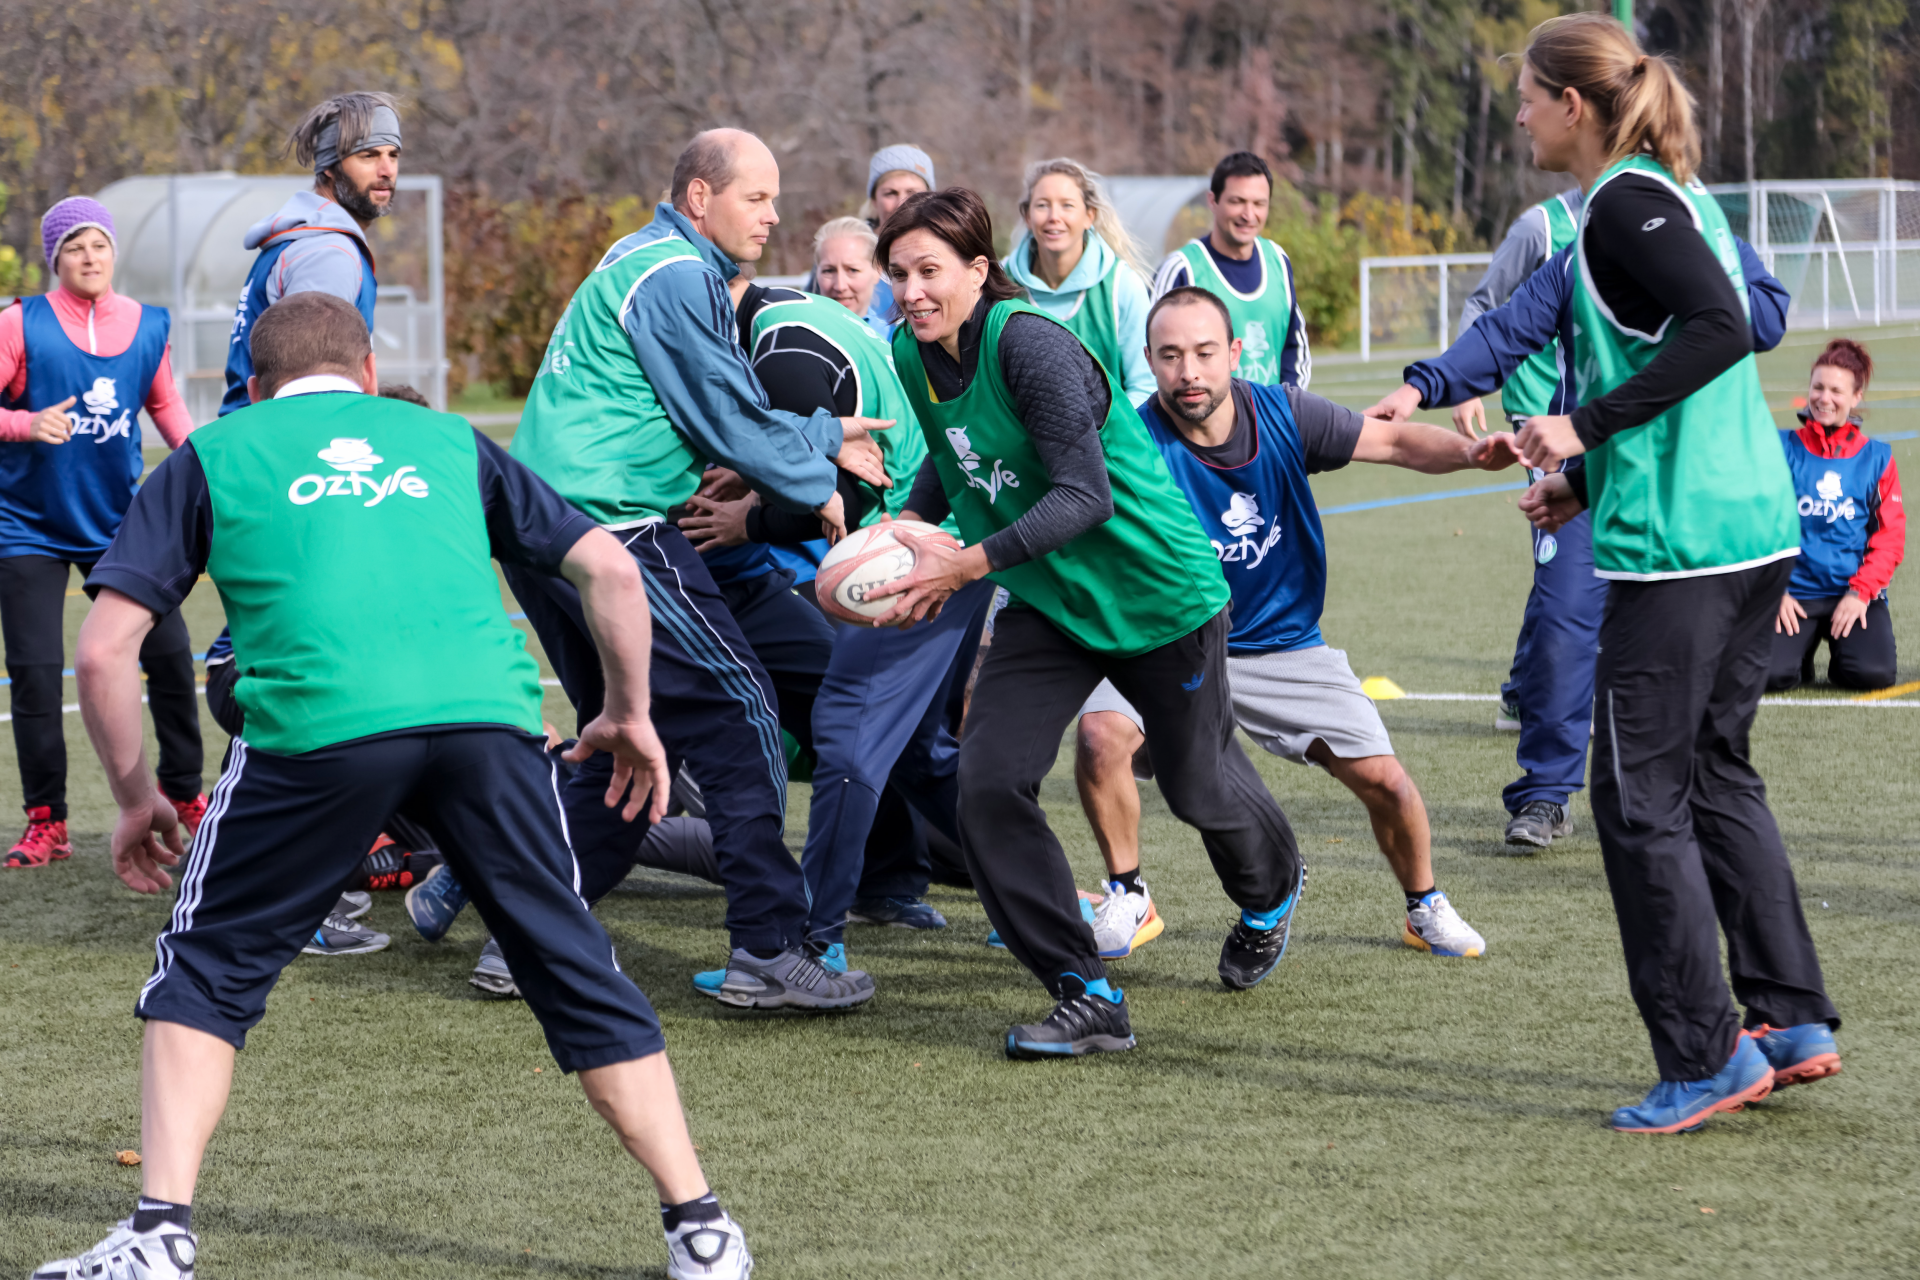 Foto: un gruppo di insegnanti gioca a rugby su un campo di calcio